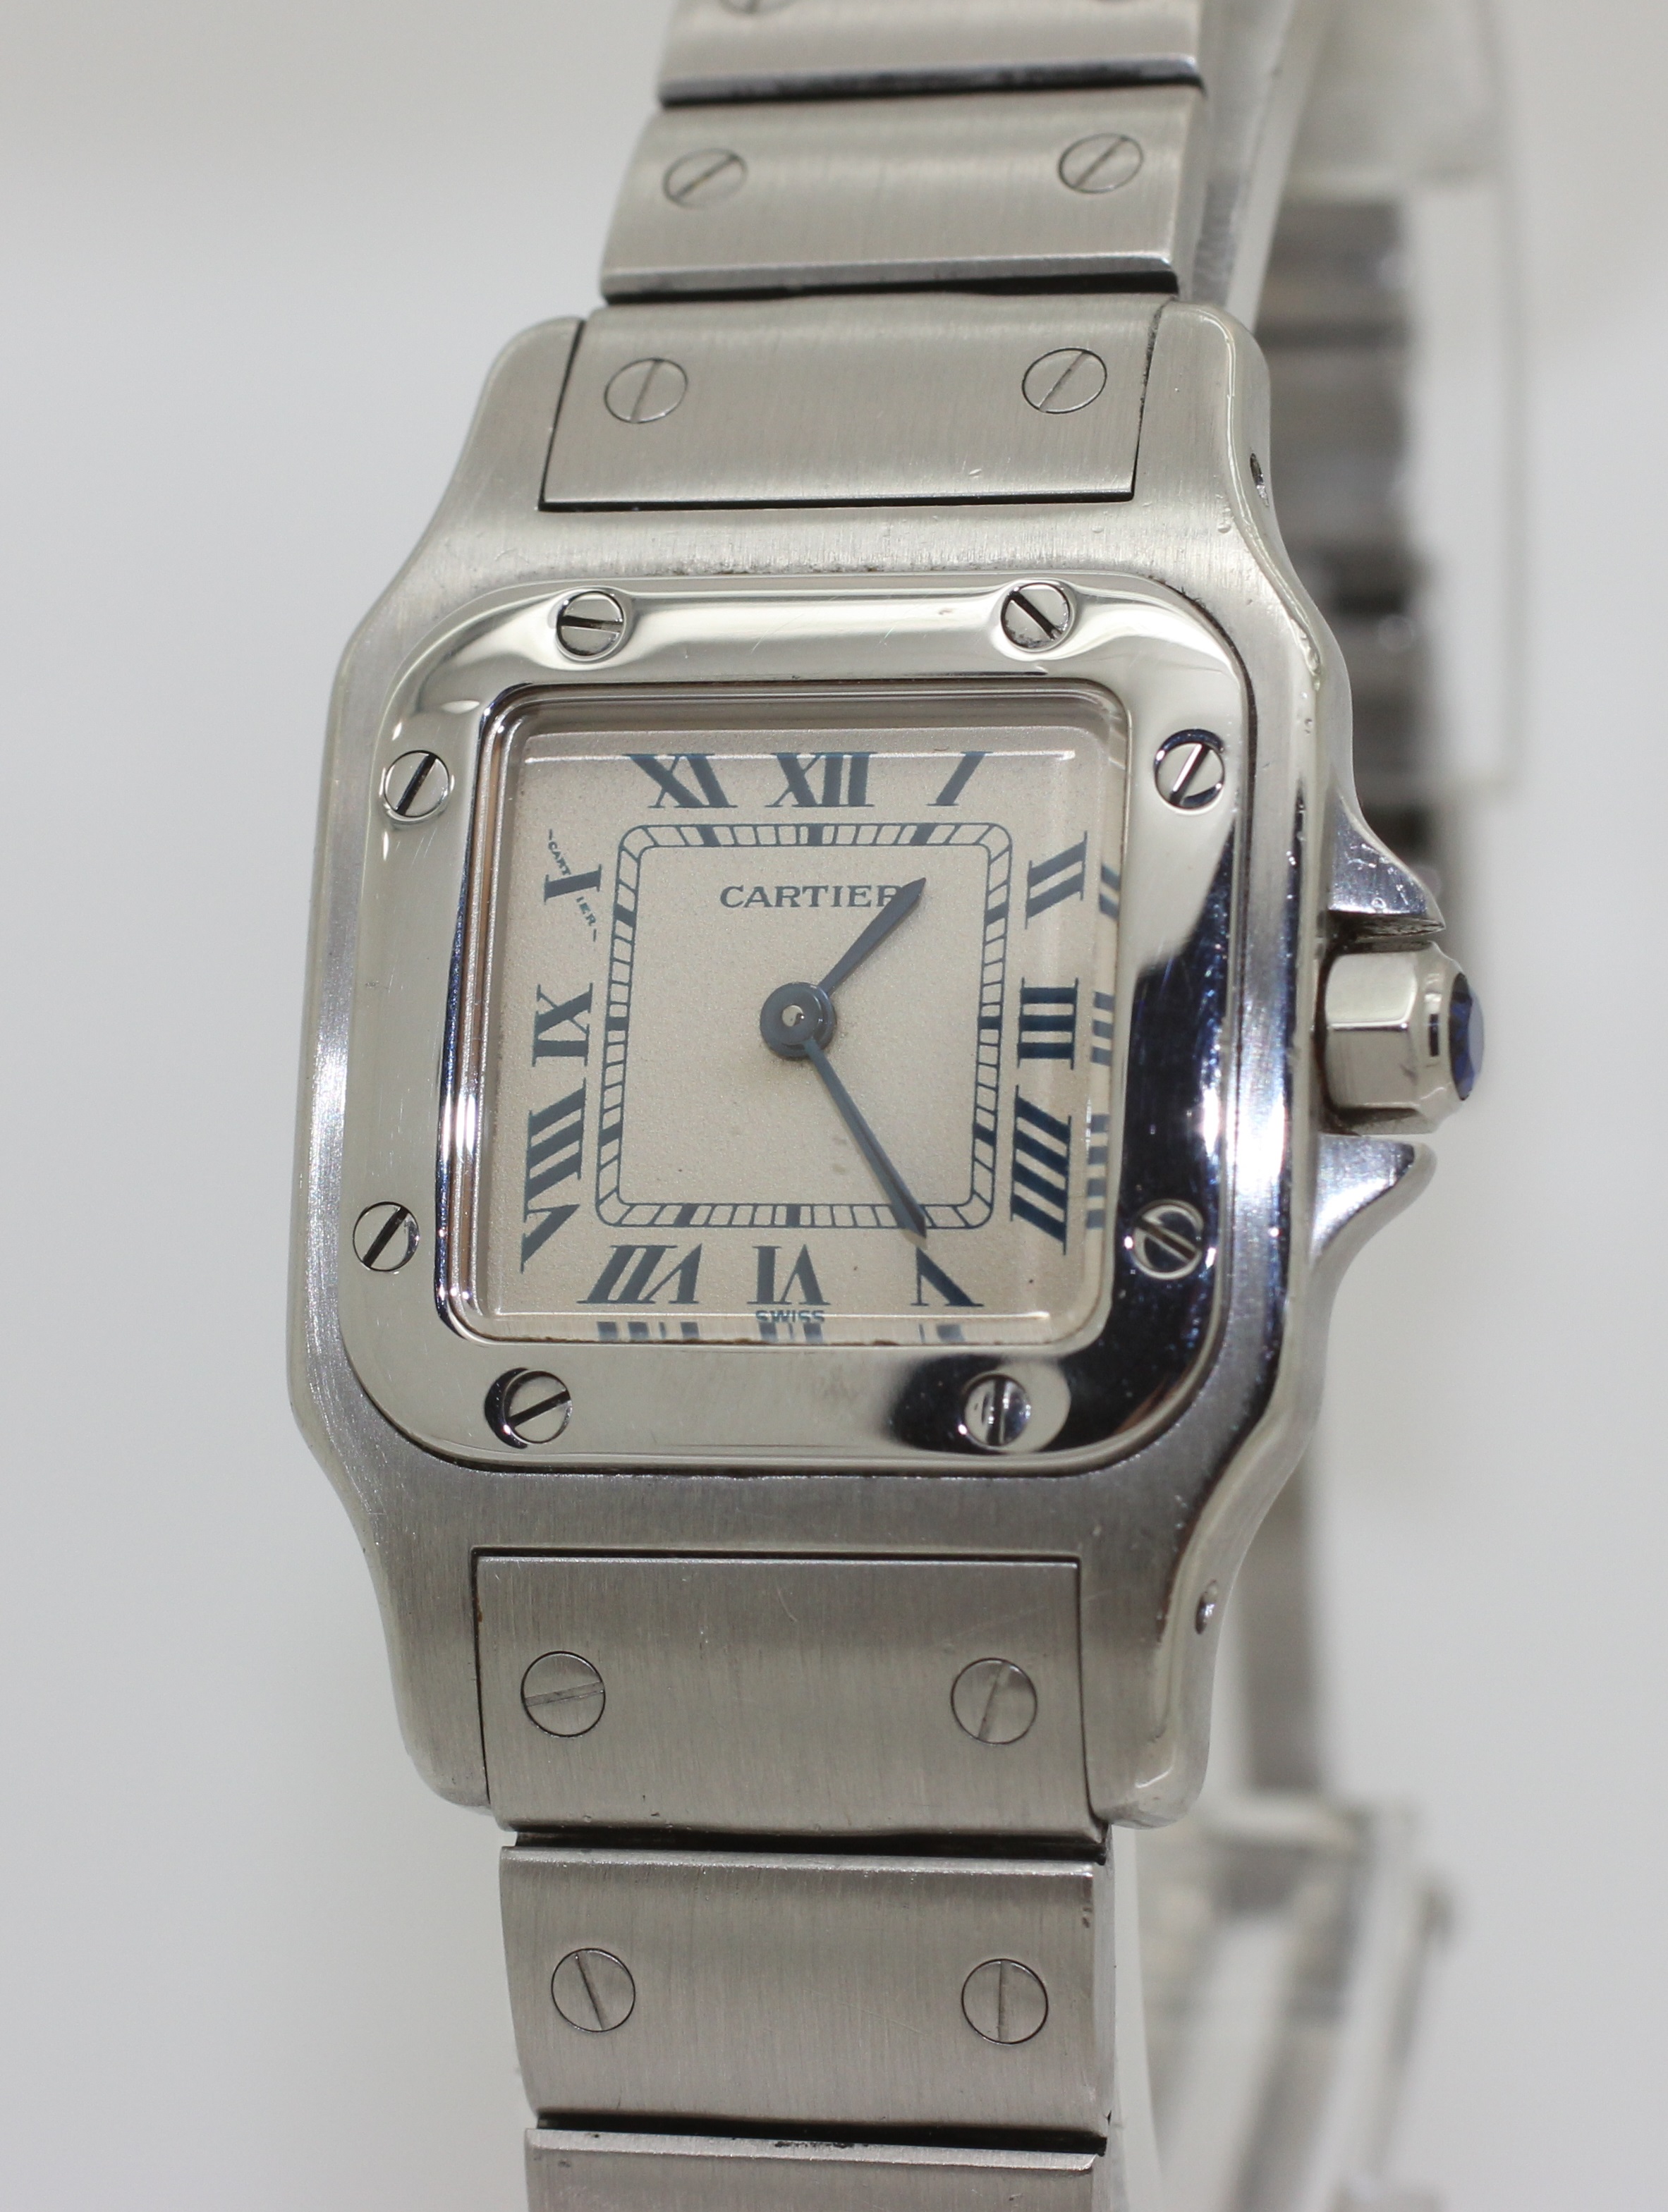 2002 Stainless Steel Ladies Cartier Santos Galbee Watch - 1565 - Quartz 25mm